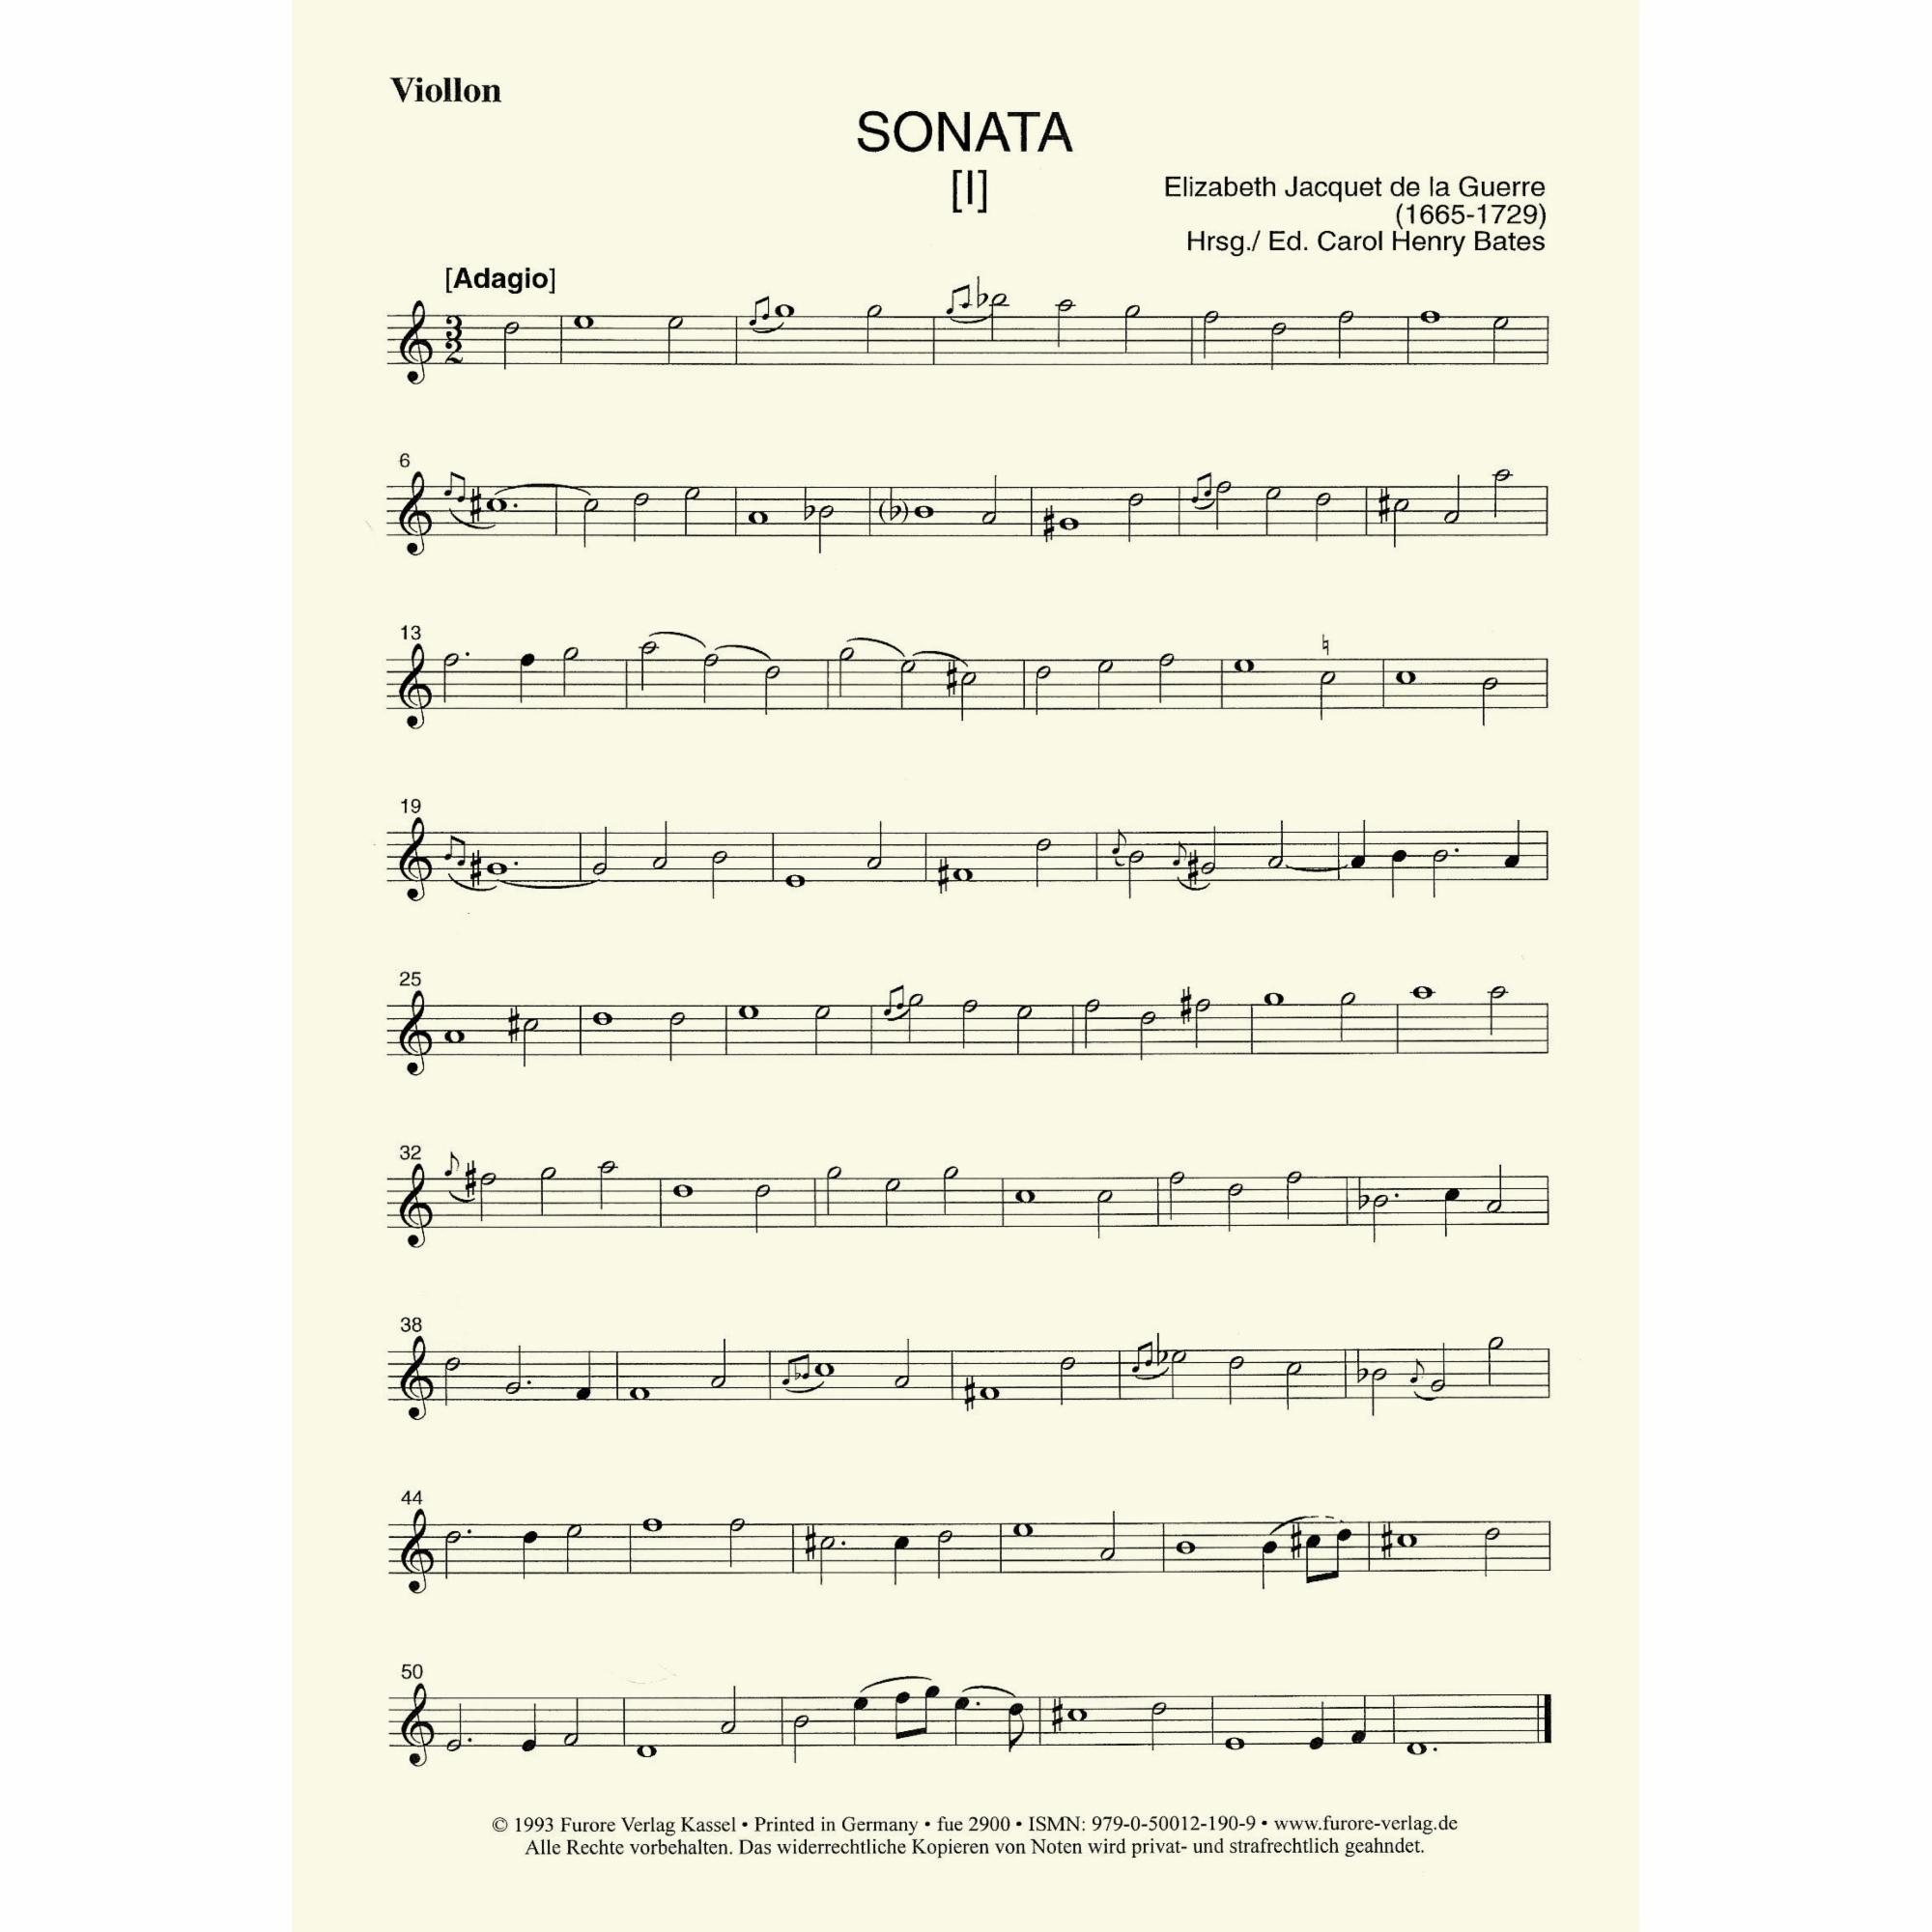 Sample; Vol. I, Violin Part